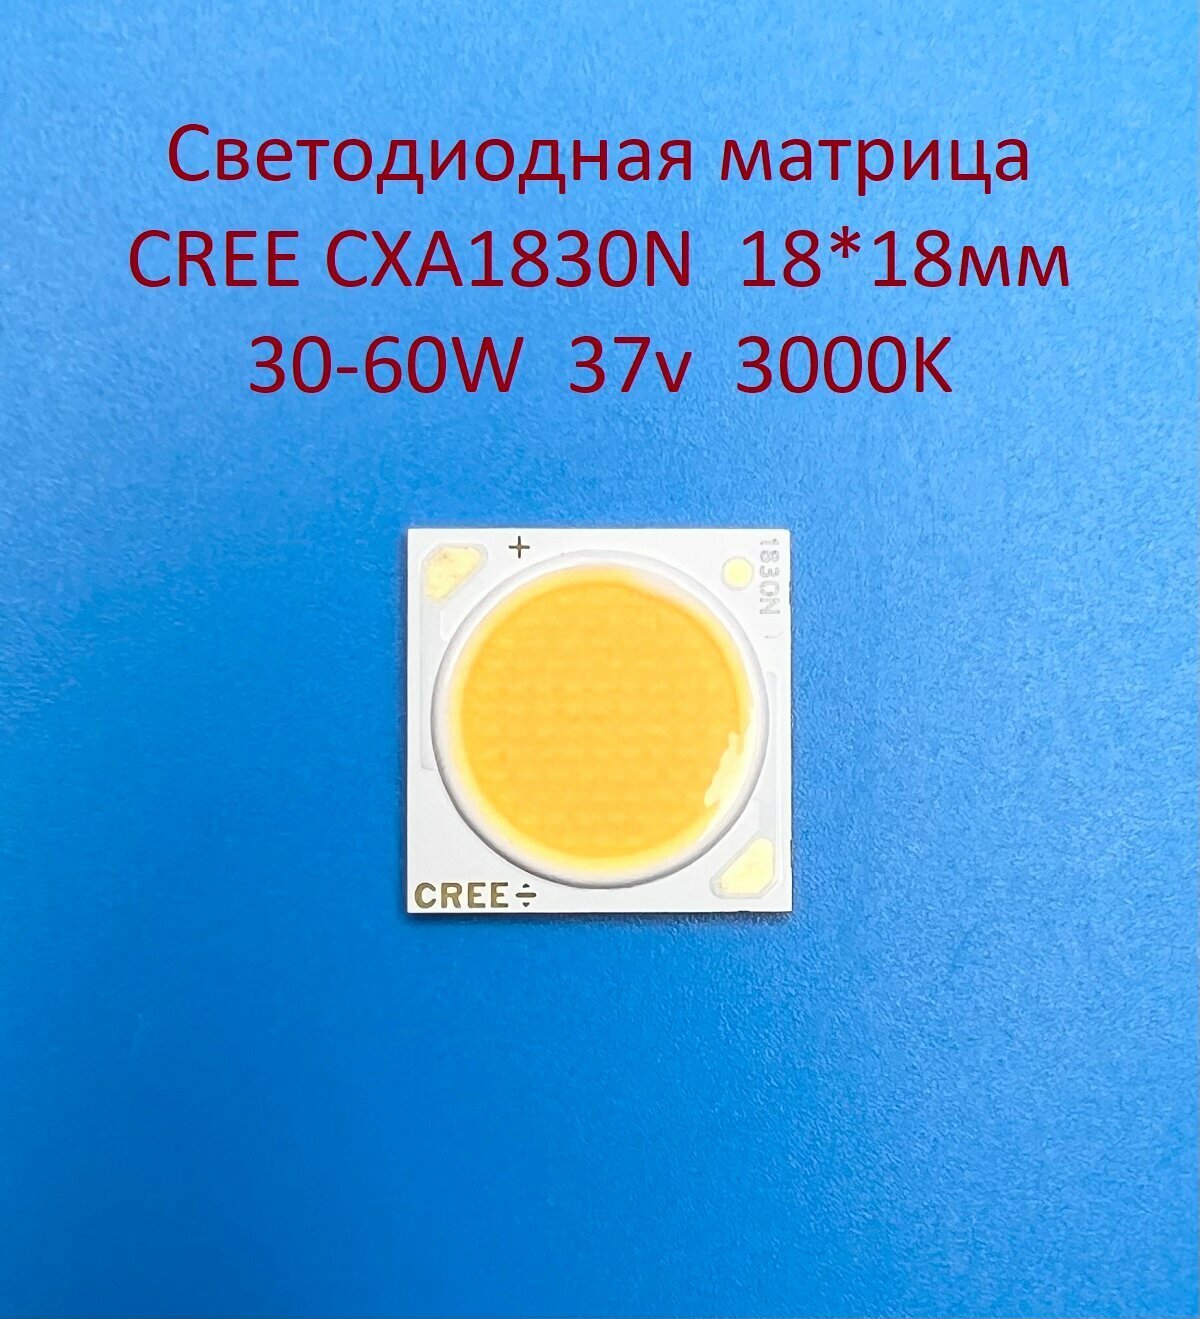 Светодиодная матрица Cree CXA1830N 30-60W 37v 800-1600mA Белая тёплая 3000K 18*18мм